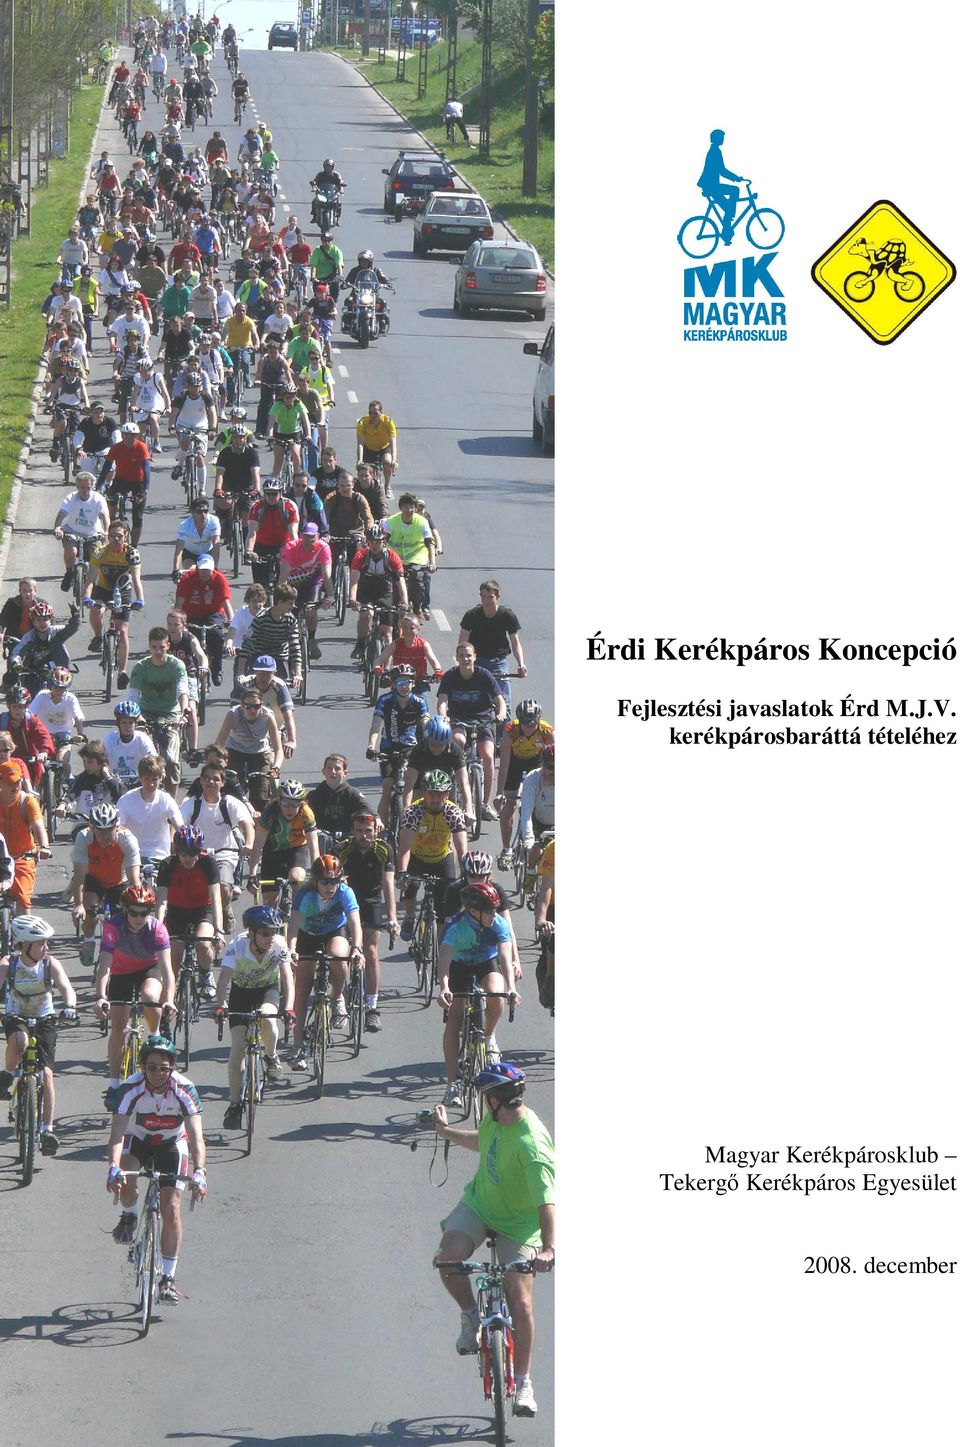 Magyar Kerékpárosklub Tekergő